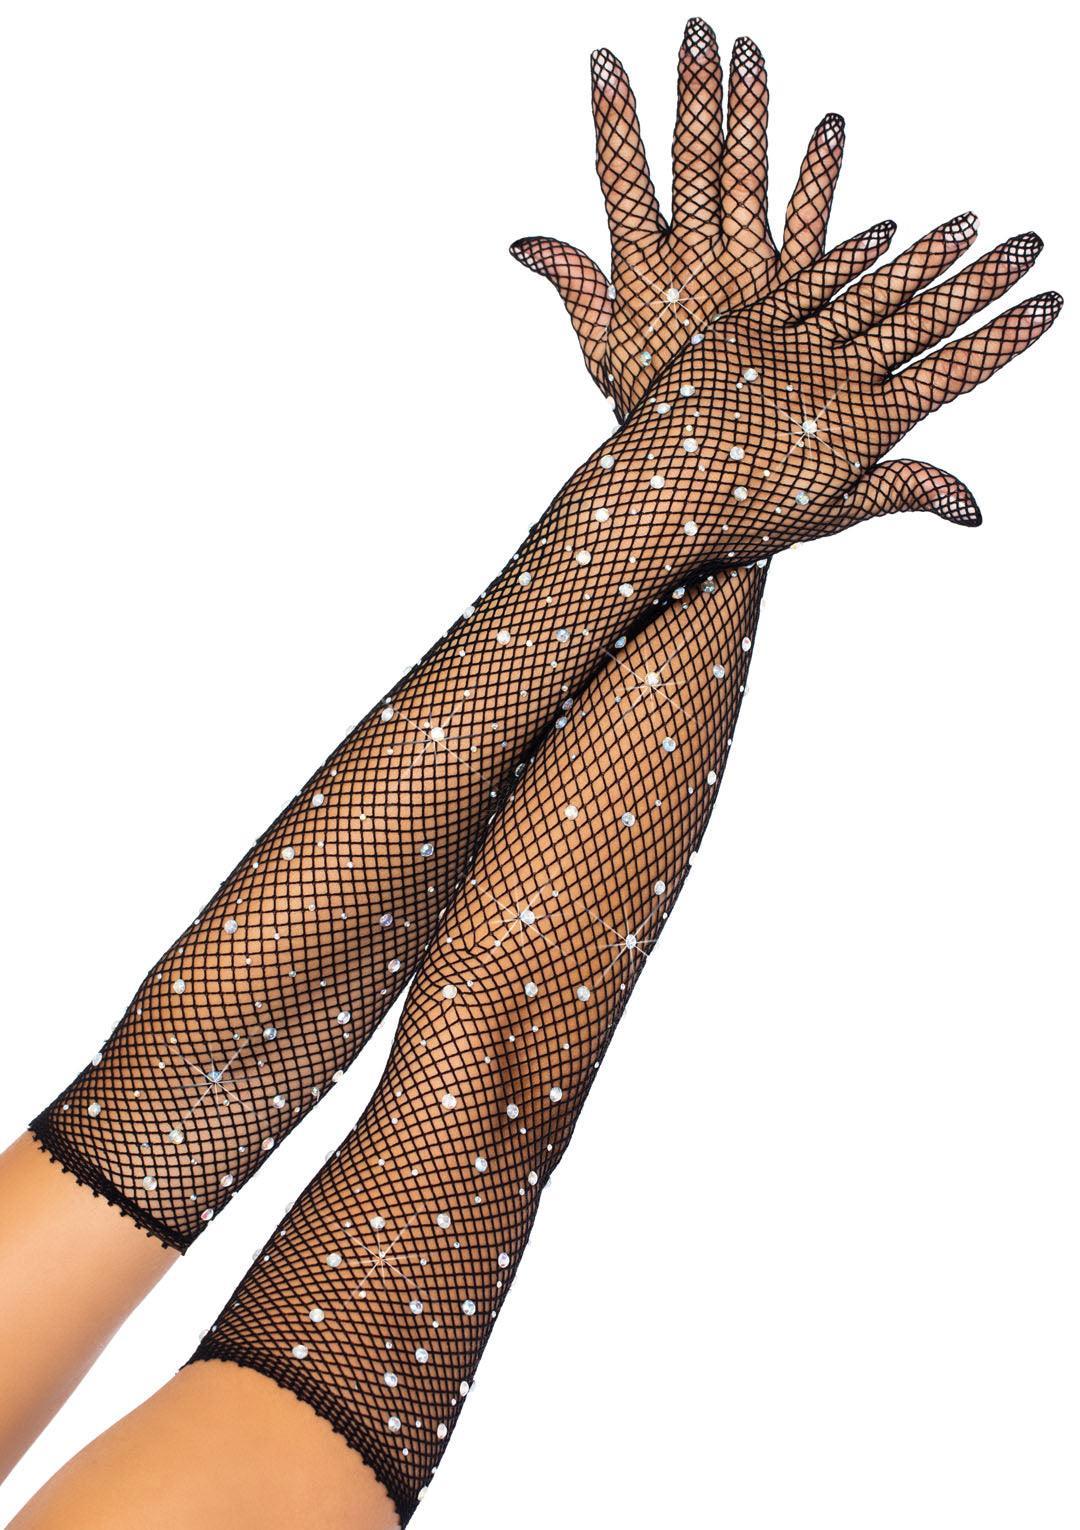 Rhinestone Fishnet Long Gloves - Black - My Sex Toy Hub